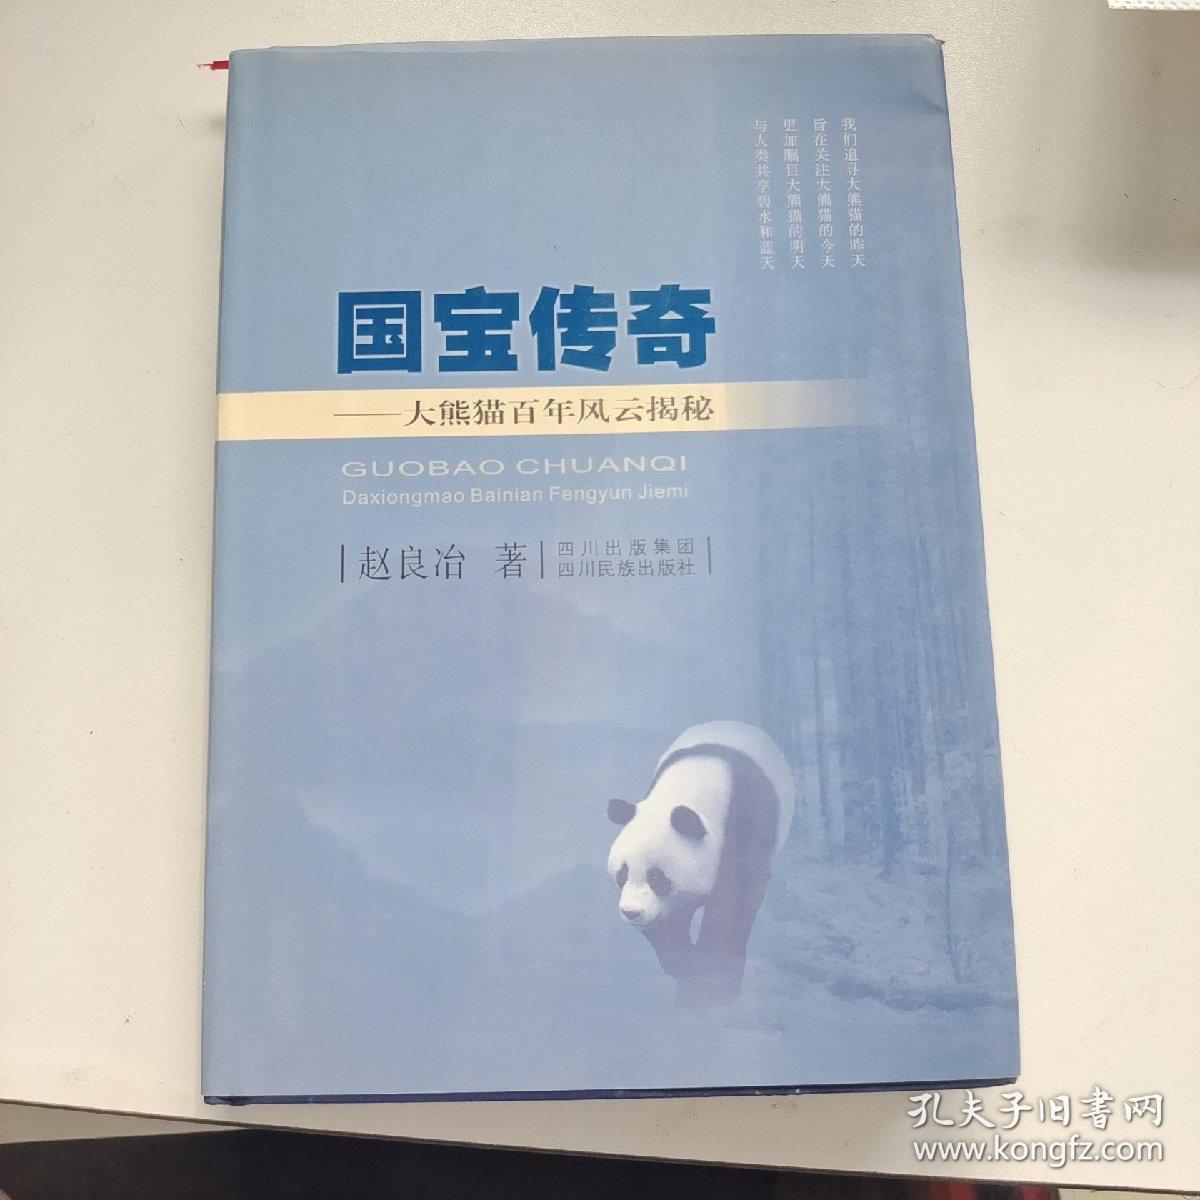 国宝传奇:大熊猫百年风云揭秘